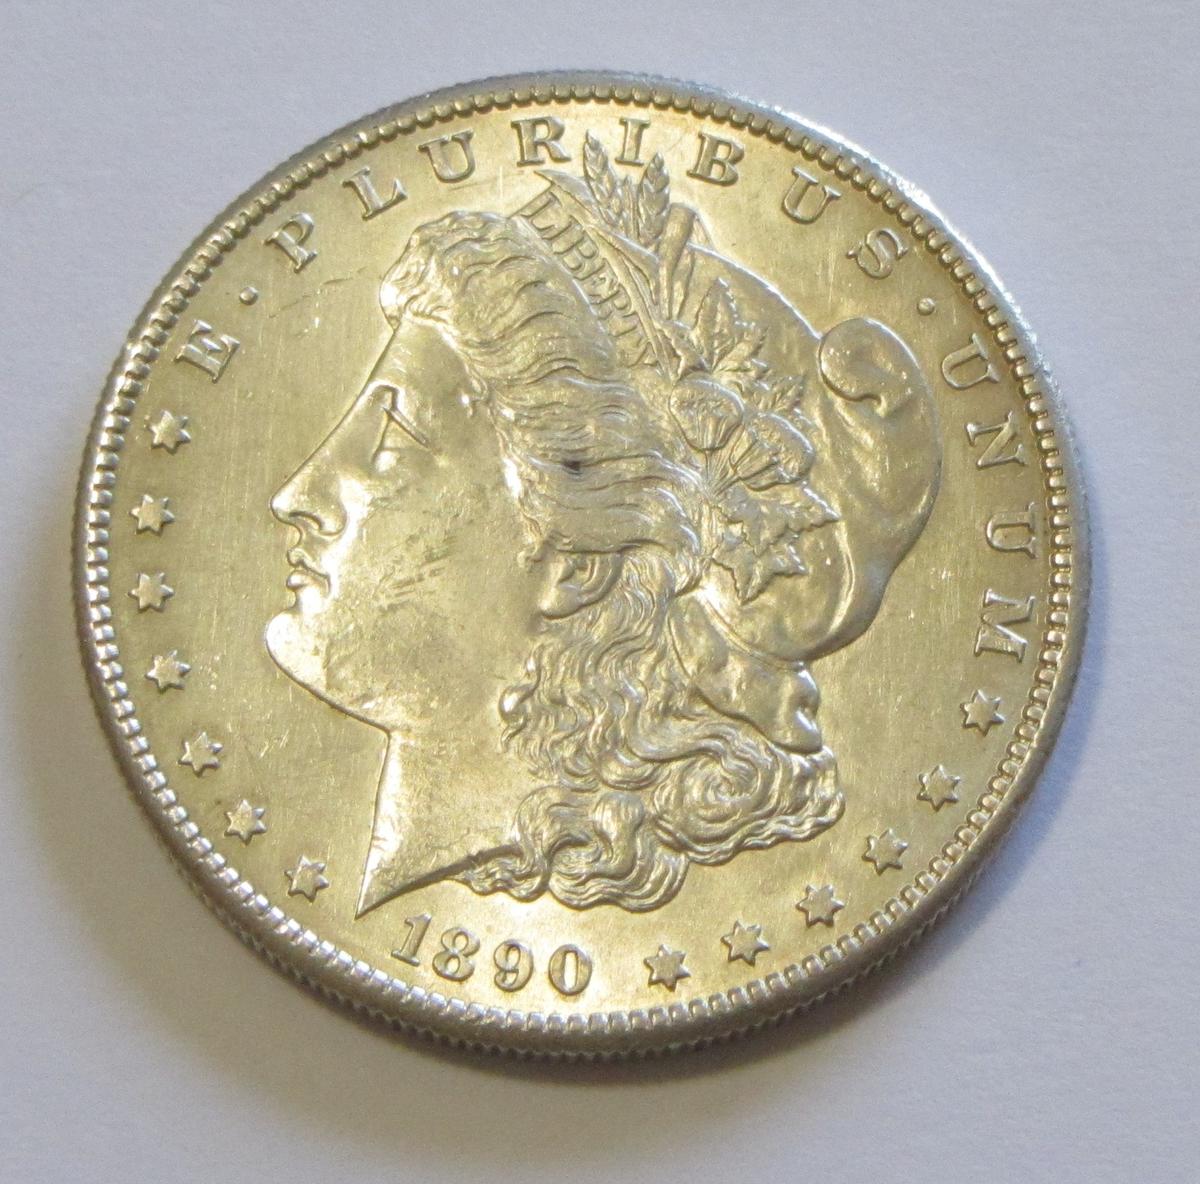 BRILLIANT UNC $1 1890-S MORGAN